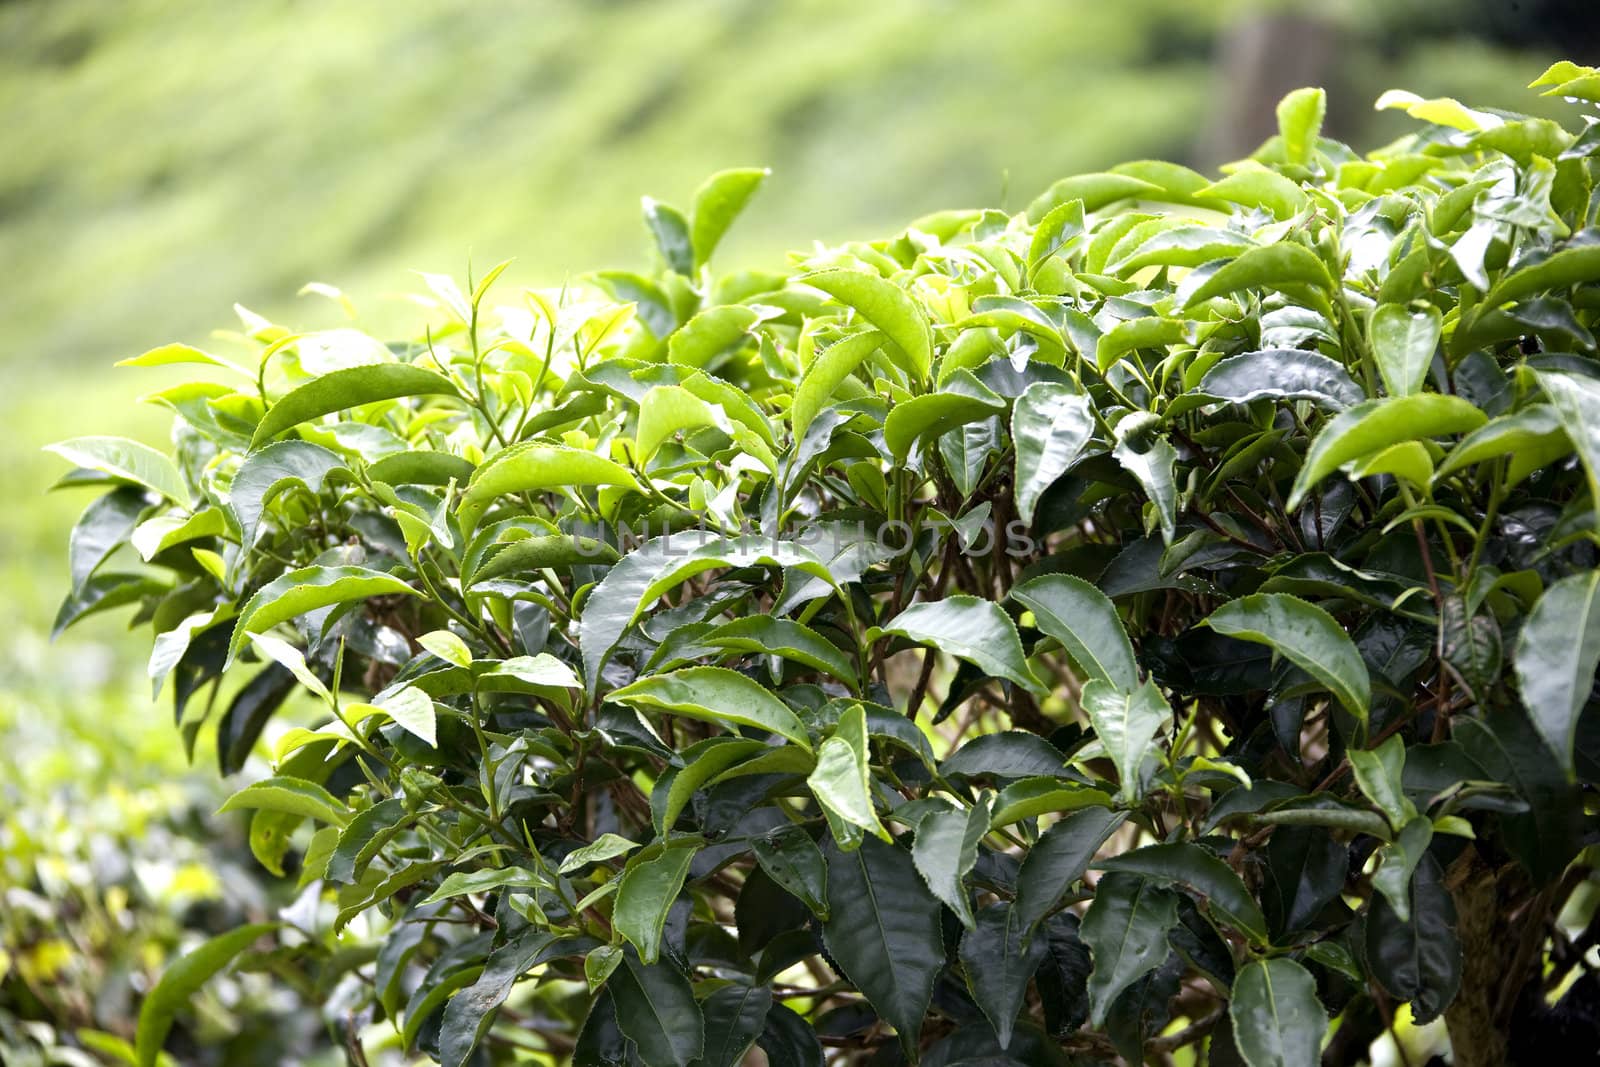 Growing Tea Leaves by shariffc